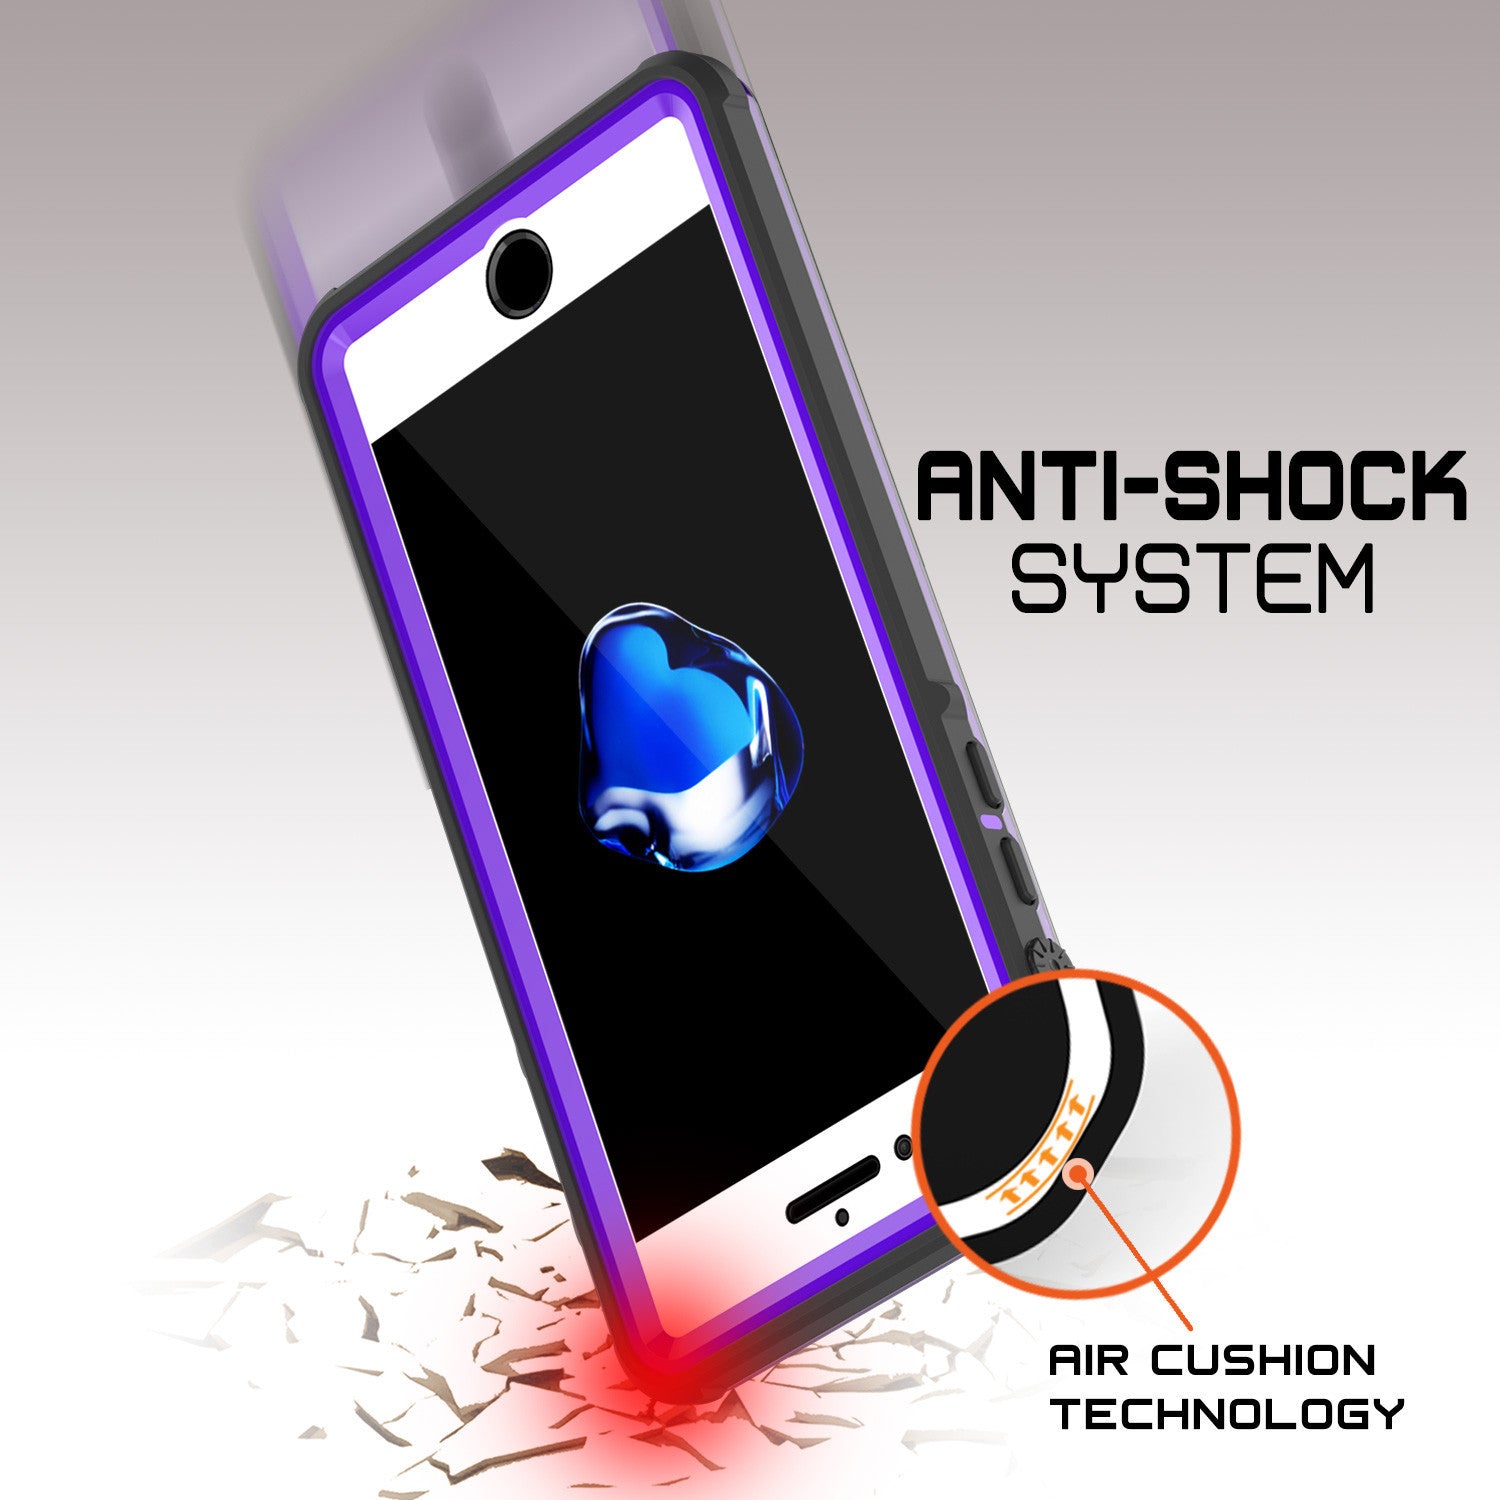 PUNKCASE - Crystal Series Waterproof Case for Apple IPhone 7+ Plus | Purple